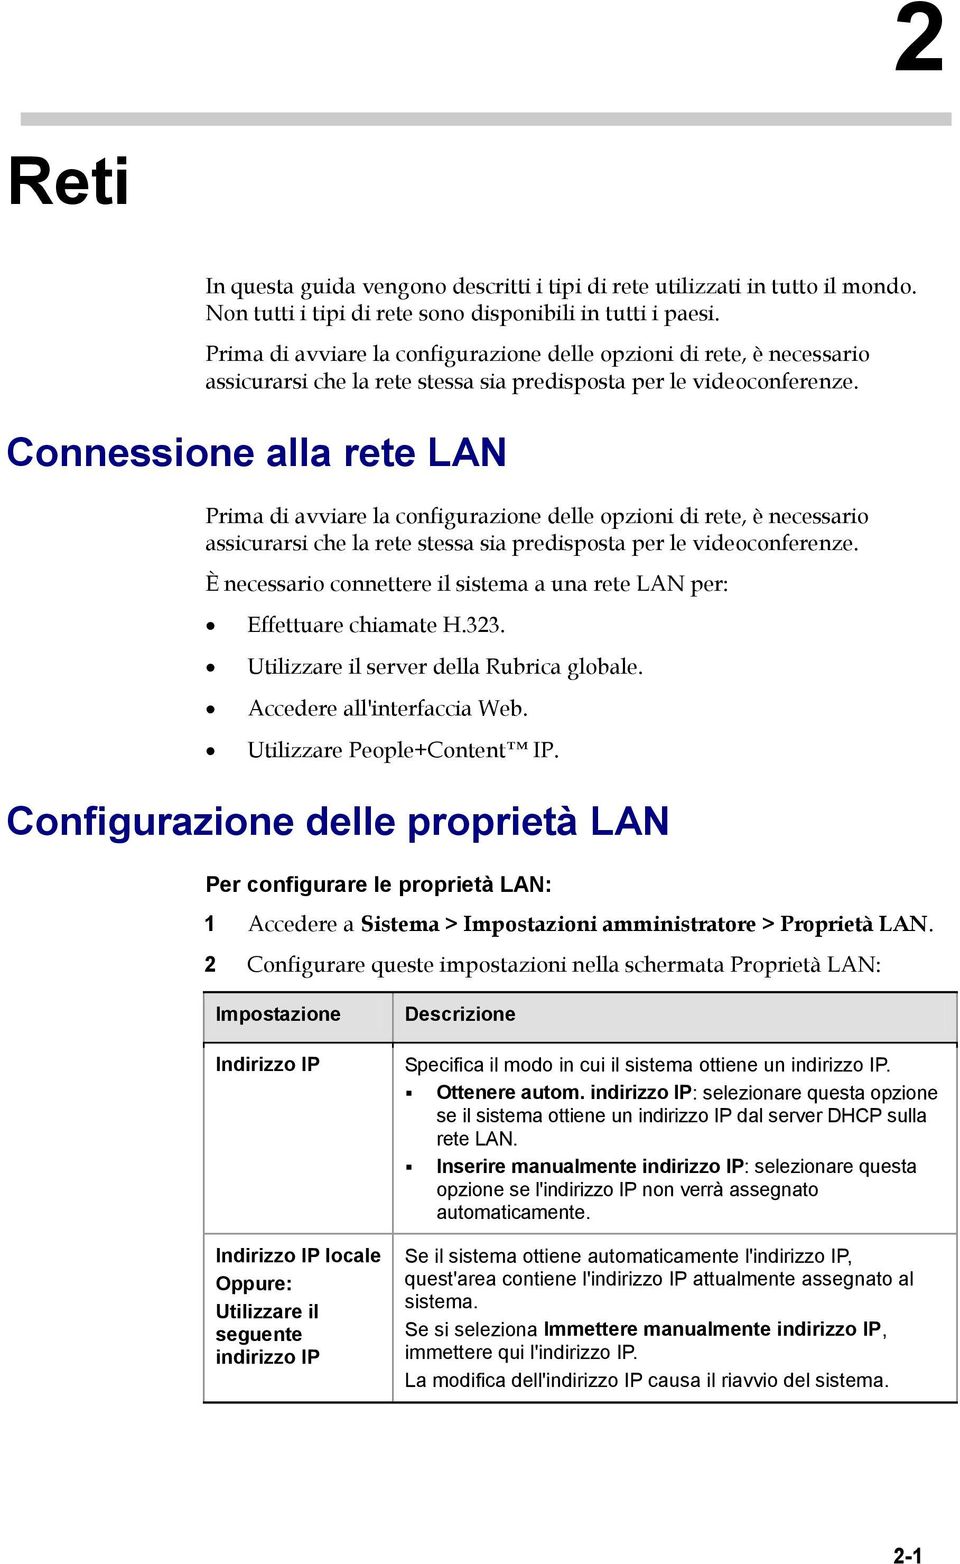 Connessione alla rete LAN  È necessario connettere il sistema a una rete LAN per: Effettuare chiamate H.323. Utilizzare il server della Rubrica globale. Accedere all'interfaccia Web.